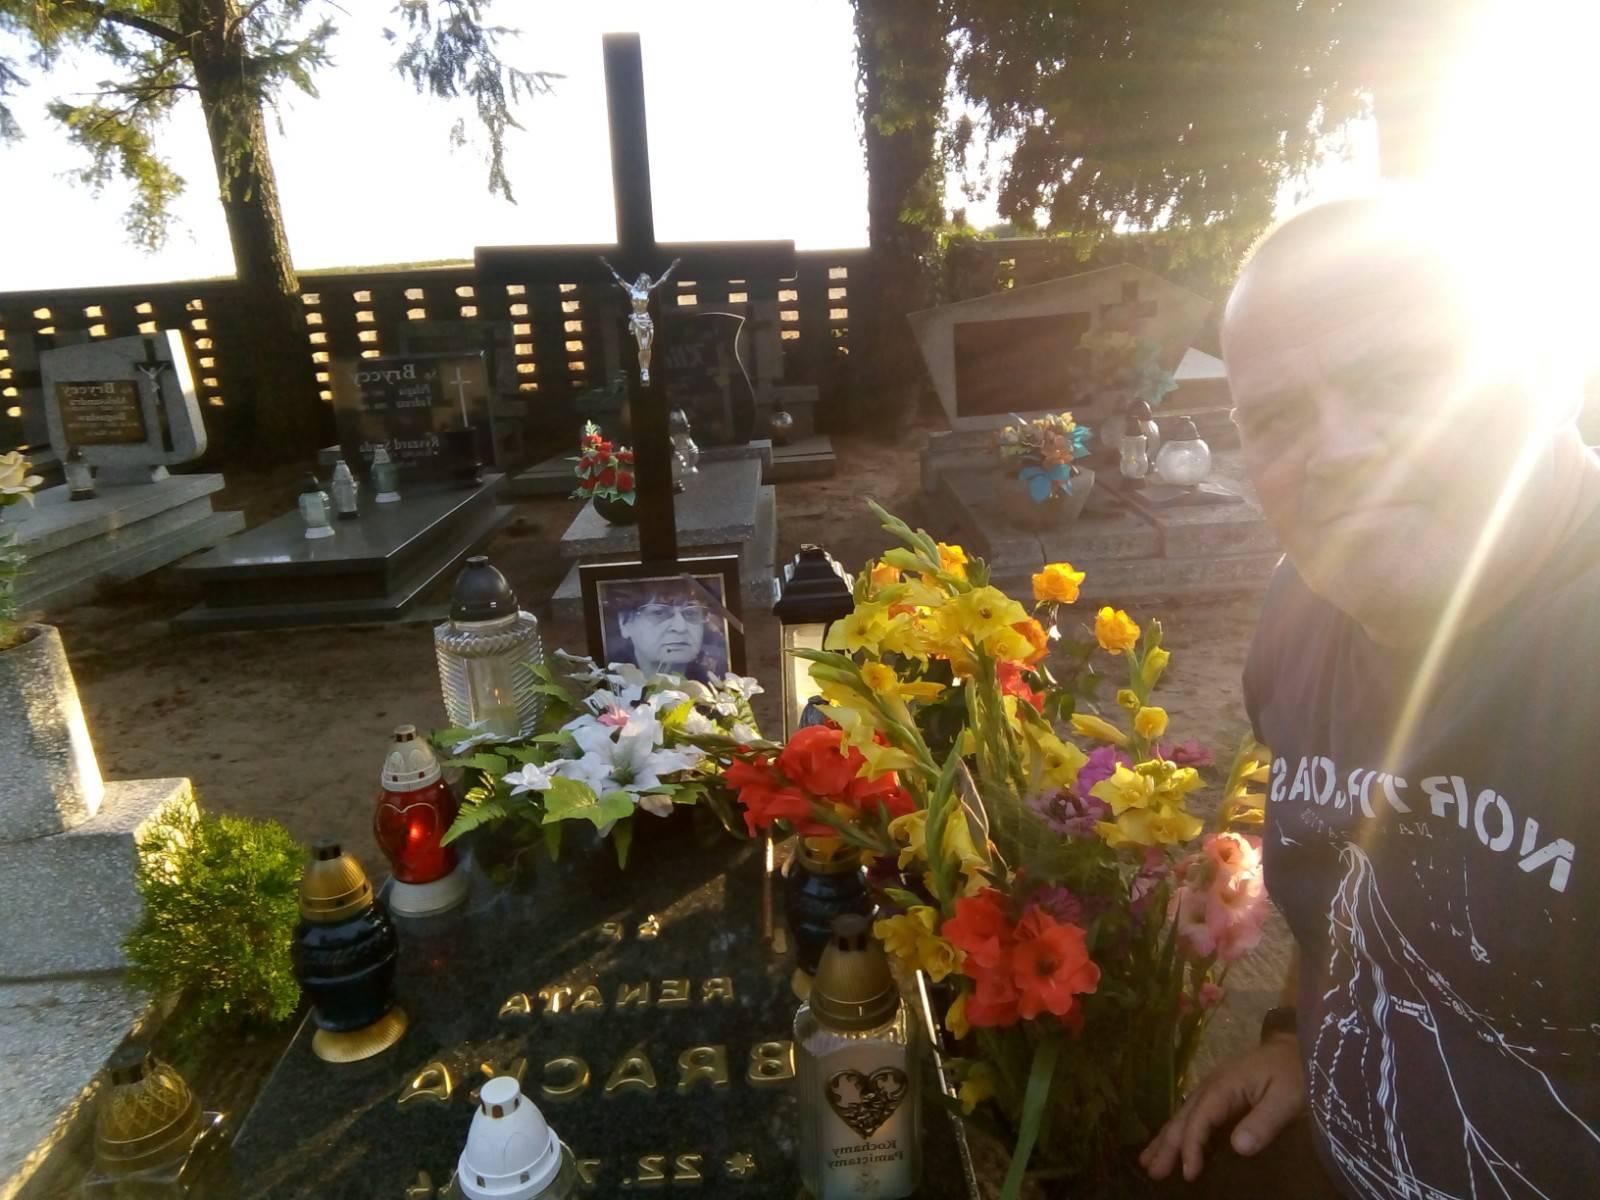 Dziś 11 sierpnia 2021 r. mija pierwsza rocznica pogrzebu mojej ukochanej Mamy ś.p. Renaty BRACKA, która spoczęła na cmentarzu komunalnym w Więcborku 11 sierpnia 2020 r. gdzie obecnie teraz się znajduję łączac siez  Mamą w modlitwie i wspomnieniu - syn  Tomasz Roman Bracka 